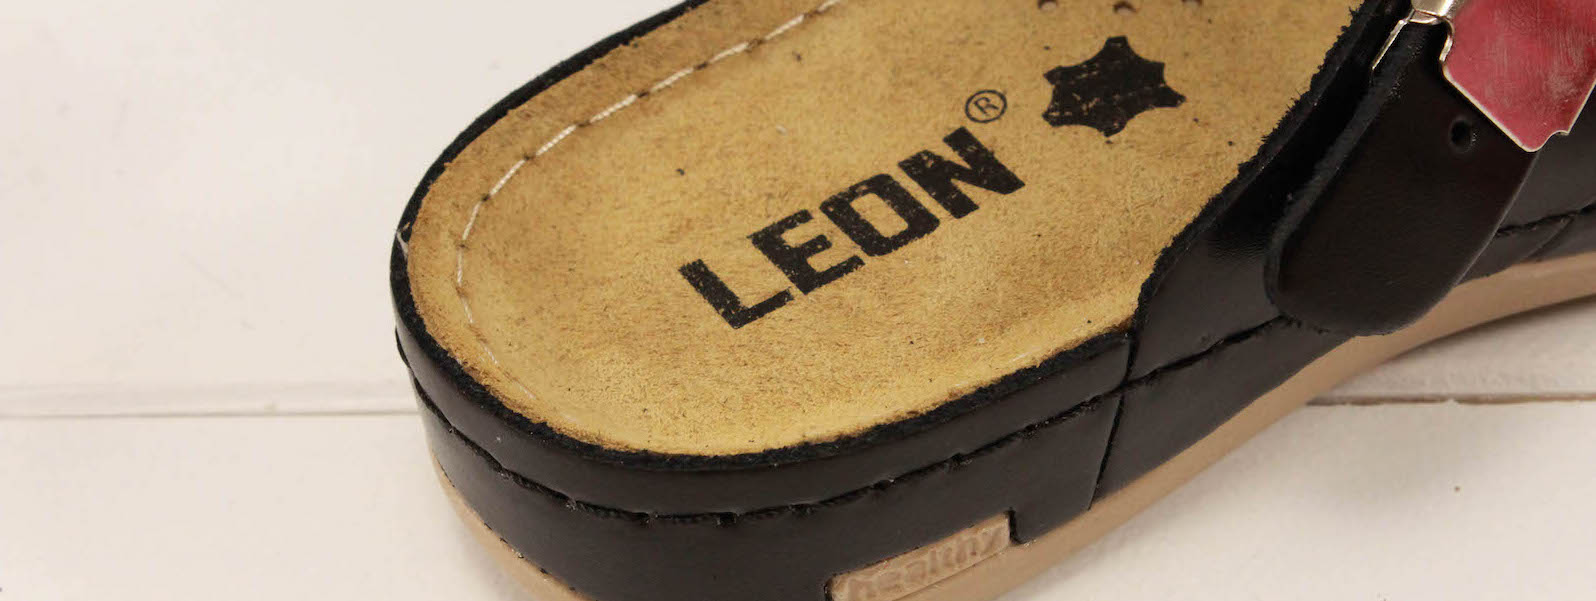 Dámská zdravotní obuv Leons Crura - Čierná